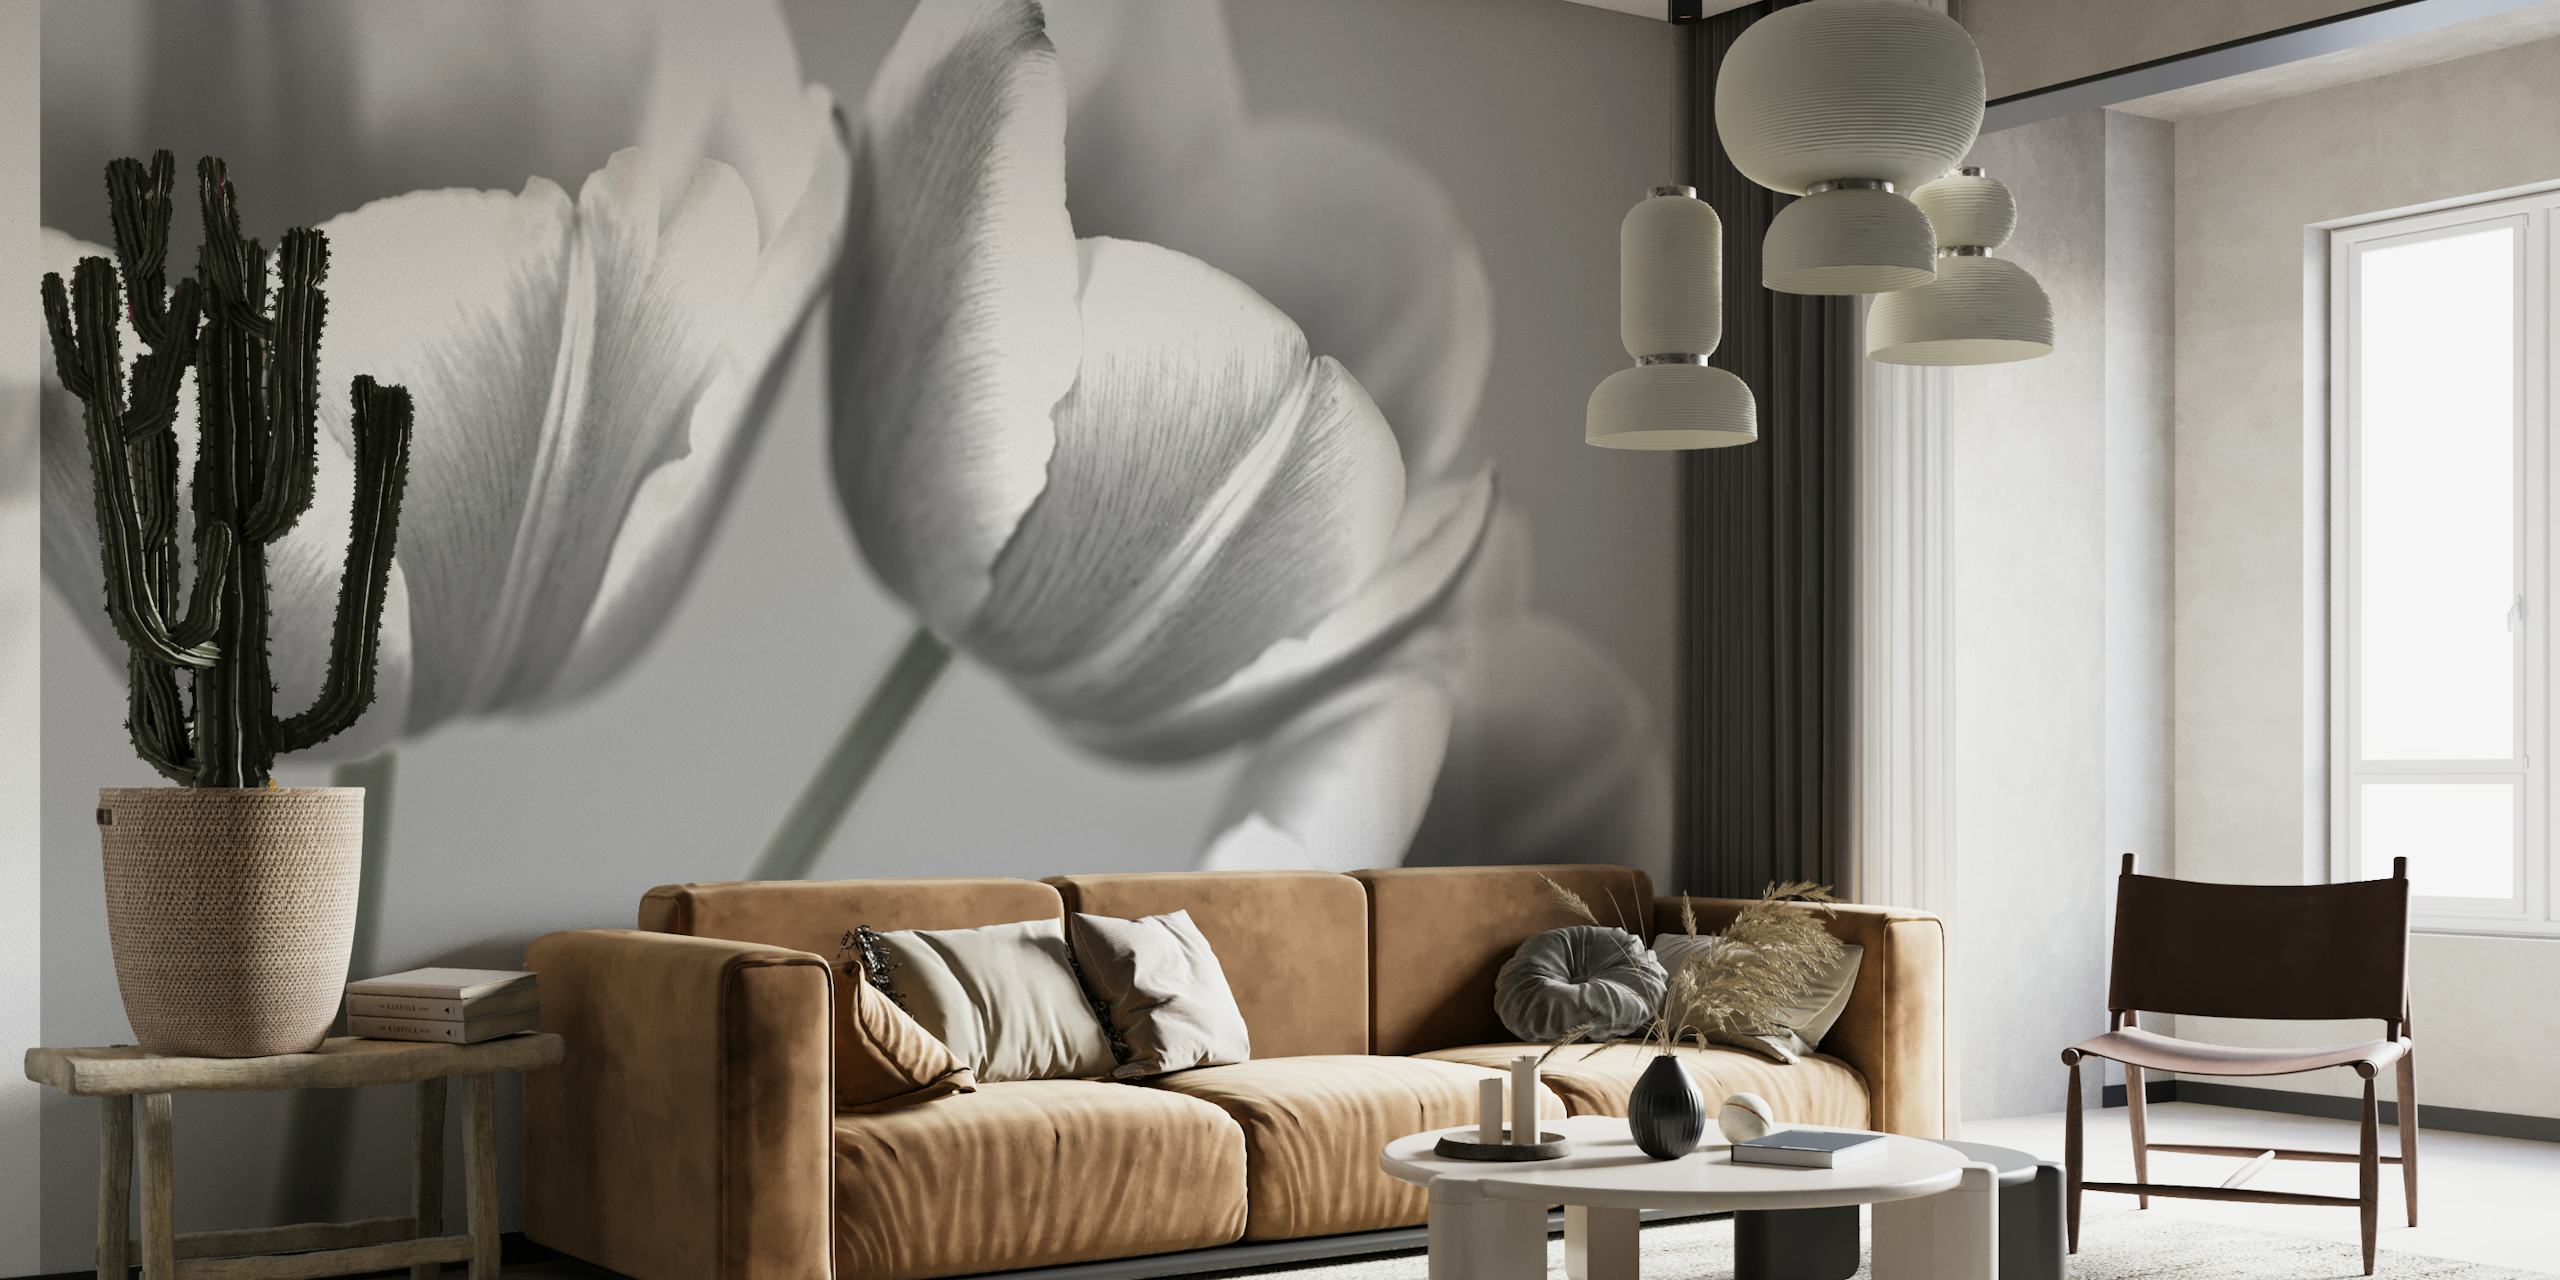 Sort og hvid tulipan vægmaleri, der viser subtil blomsterelegance